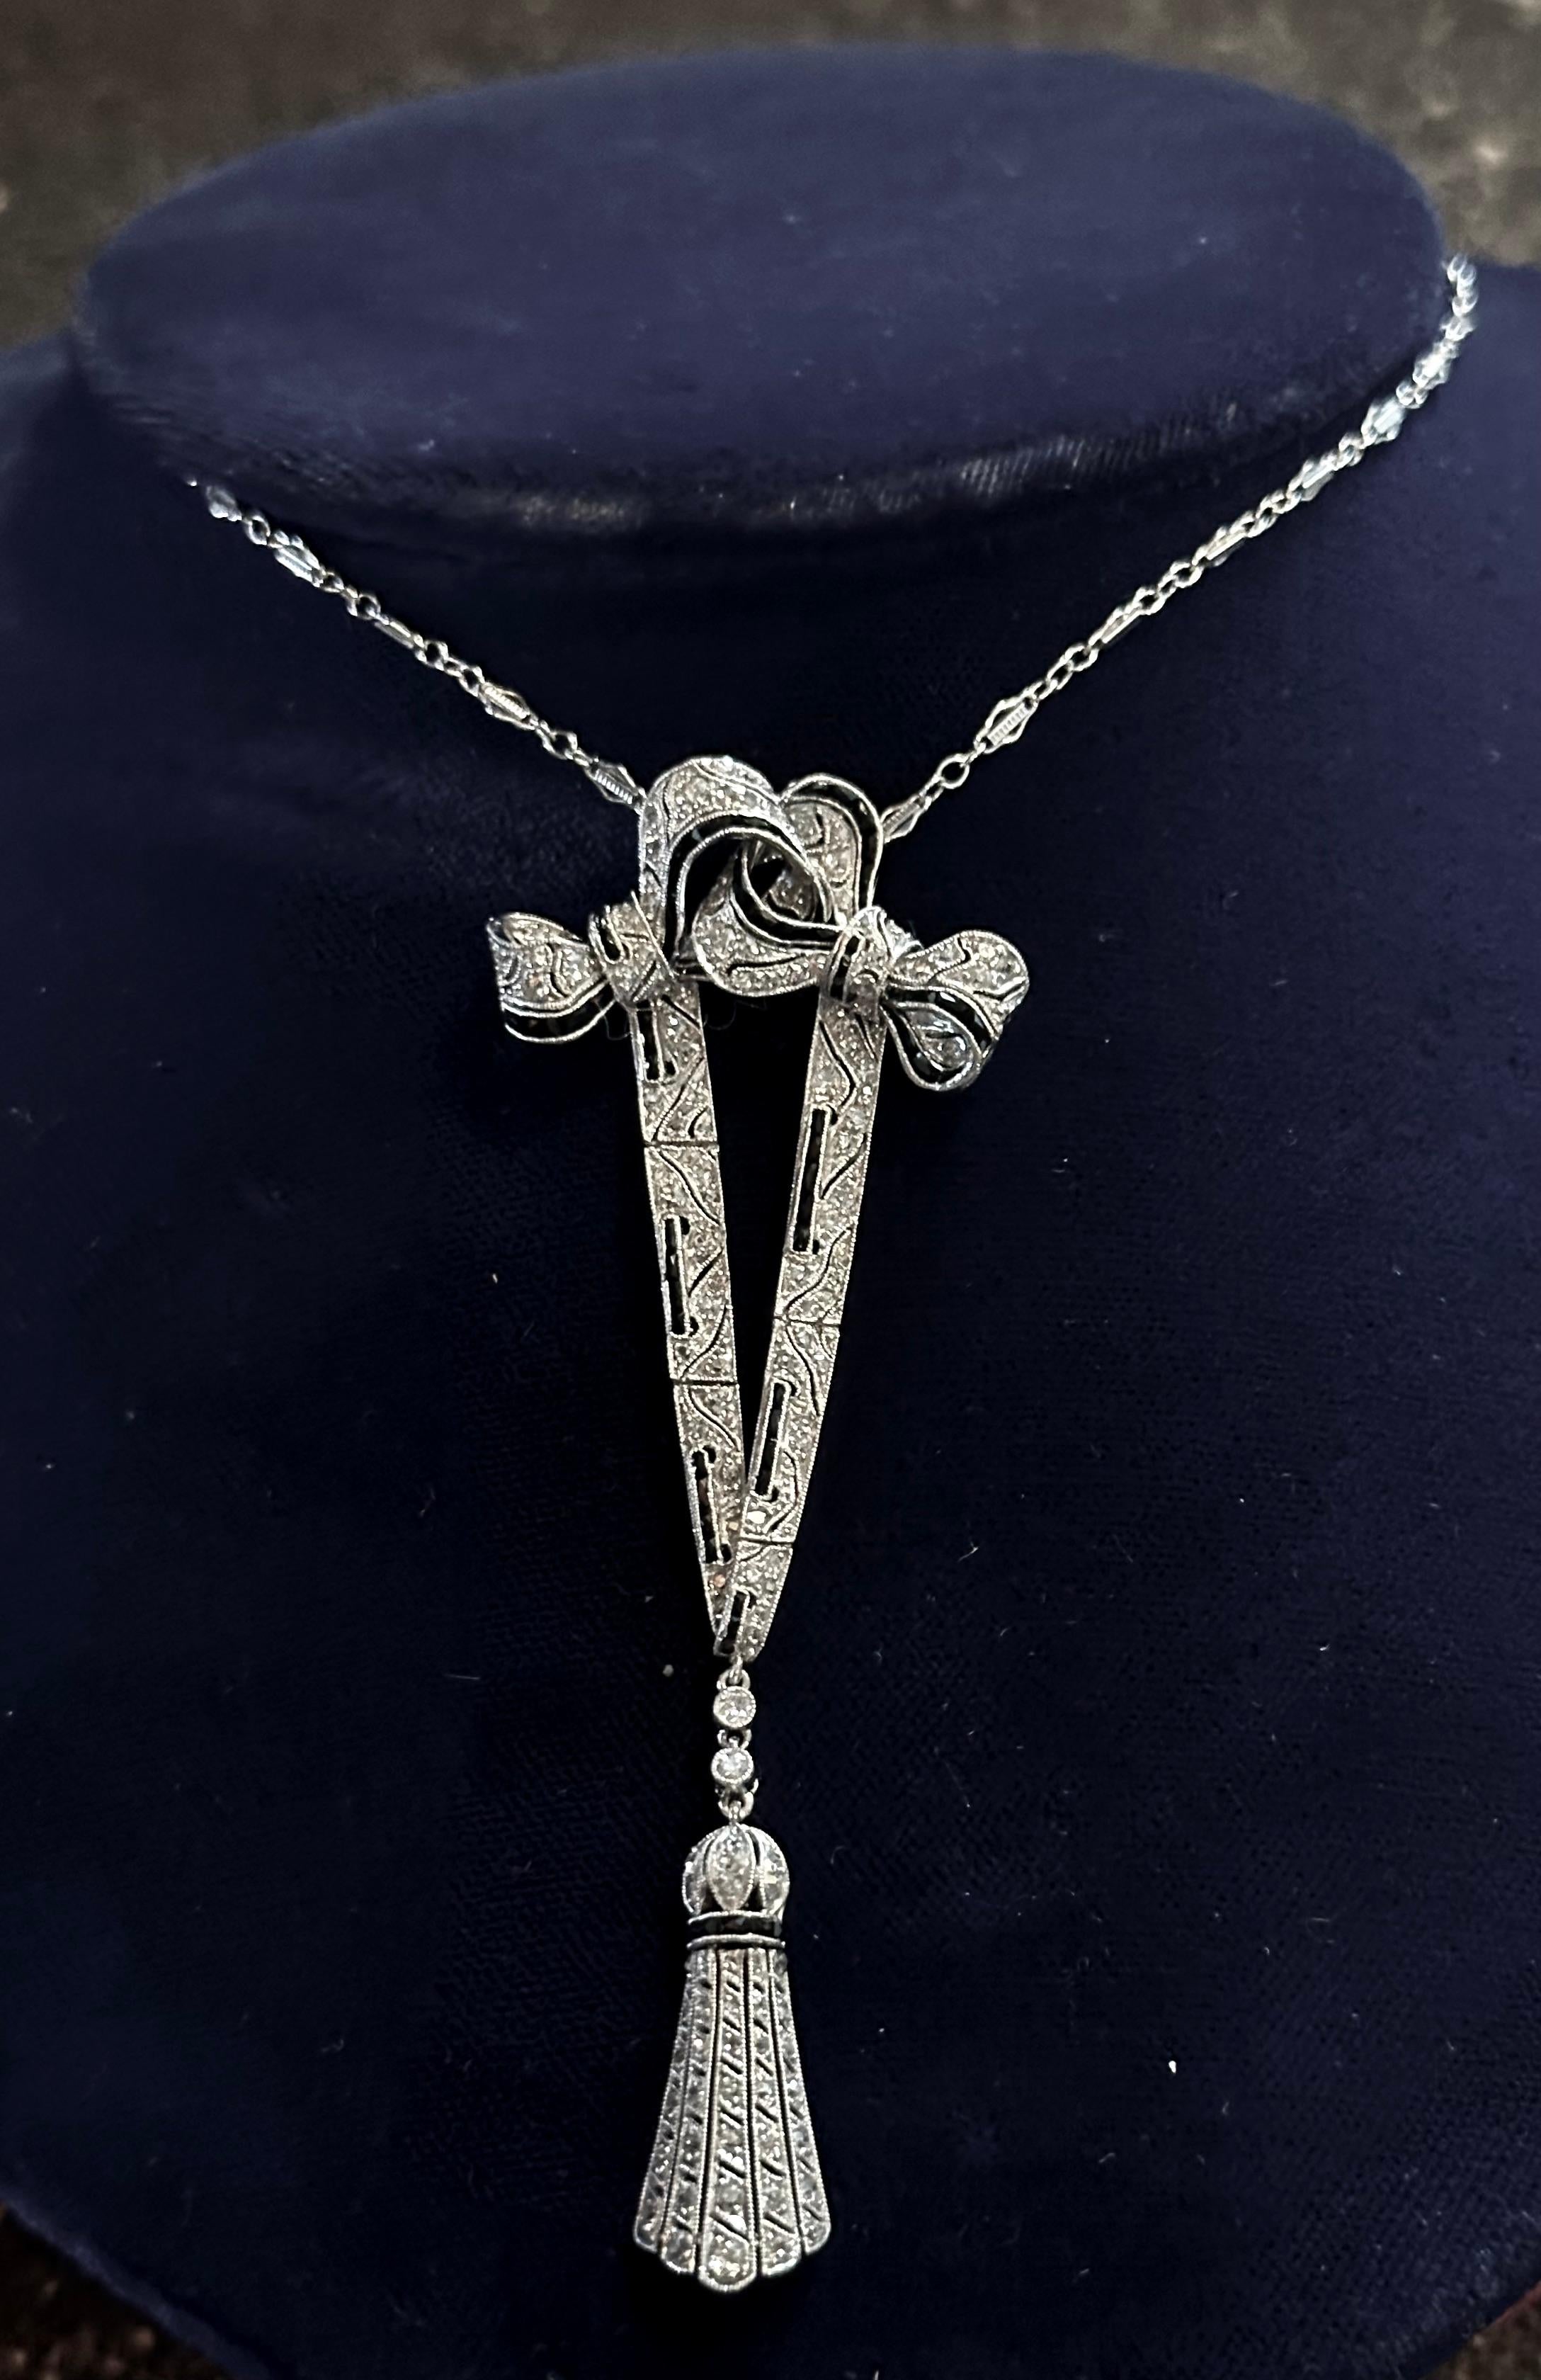 Ce superbe collier de lavallière édouardien en platine et diamants date du début du 20e siècle. Ce pendentif fait à la main est à la fois beau et séduisant. Il est orné de diamants de taille européenne et de saphirs bleu nuit. Les diamants